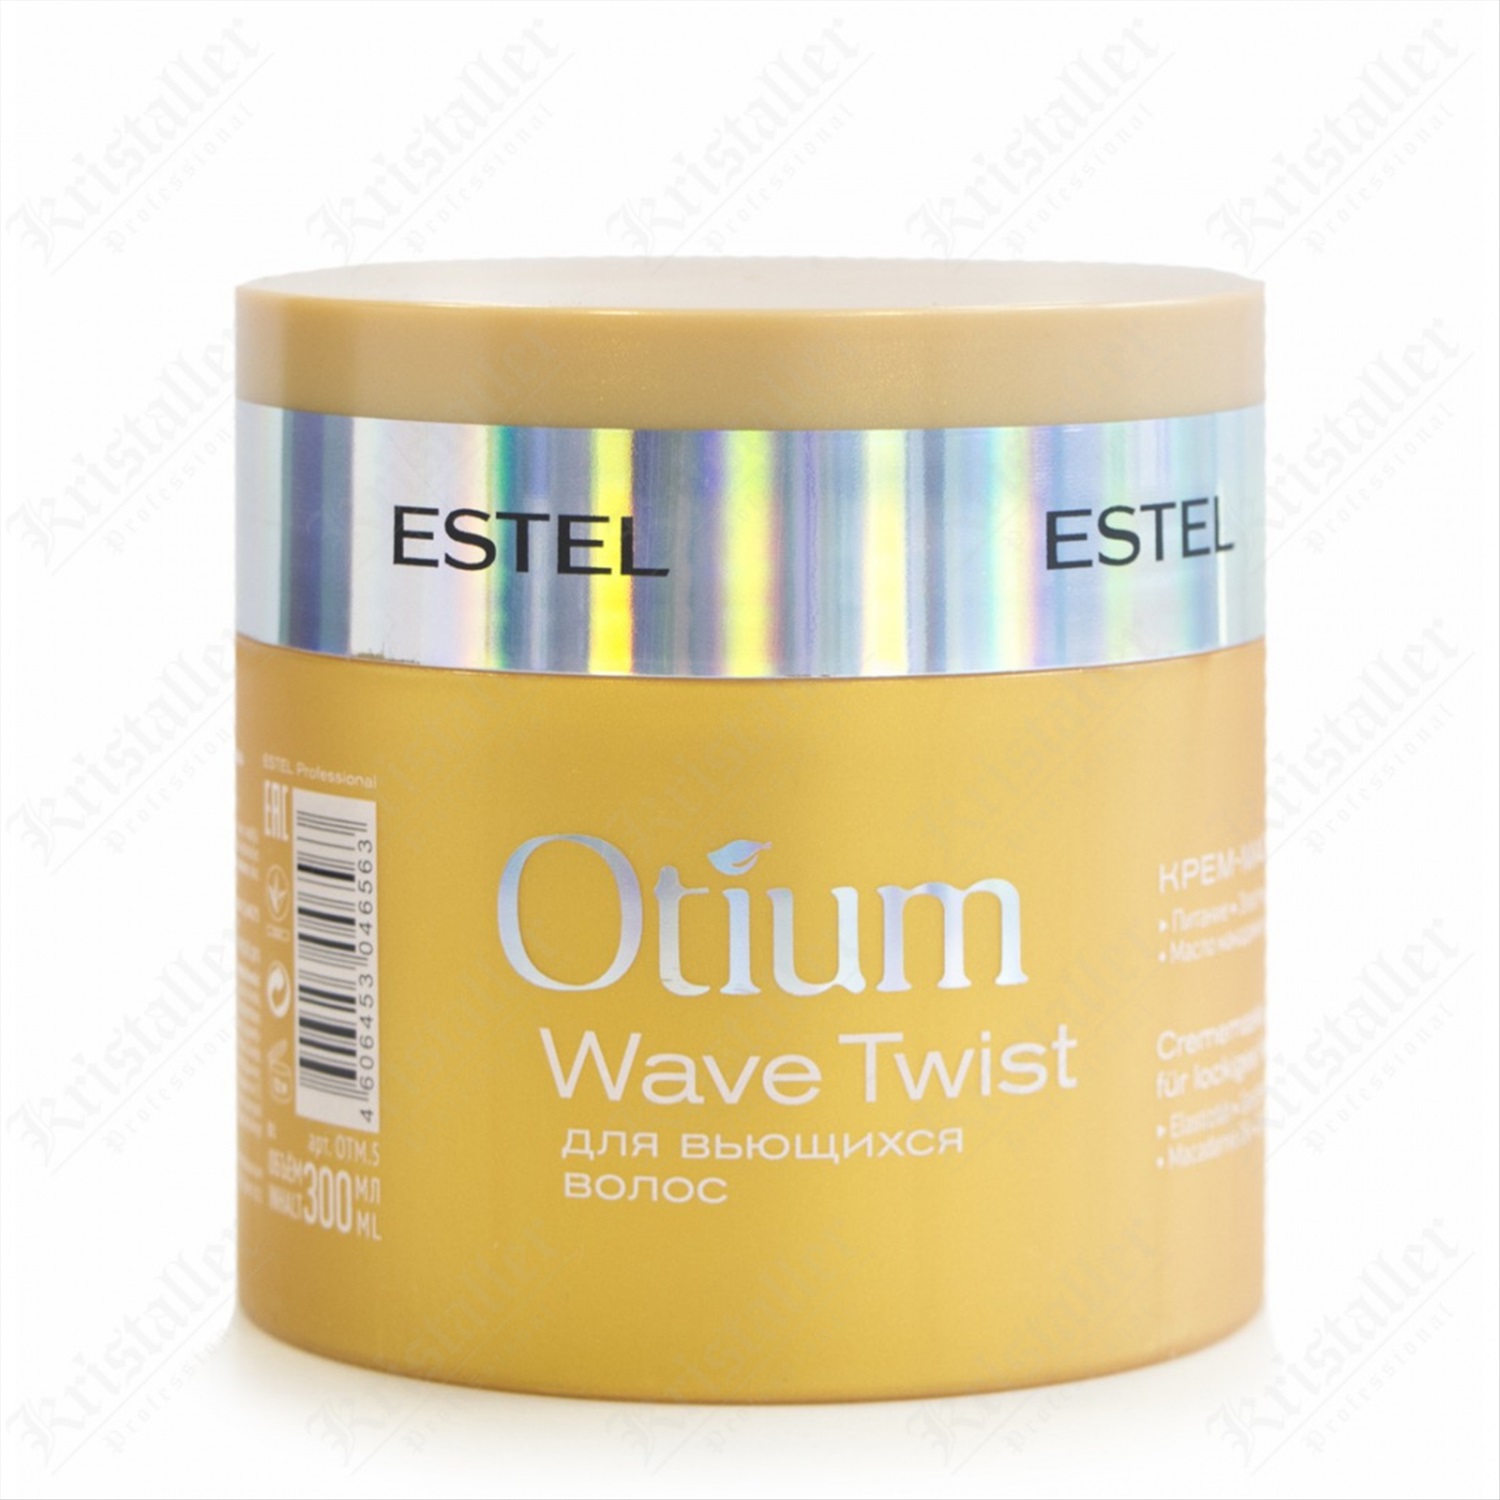 Бальзам маски эстель. Estel Otium Wave Twist крем-маска для вьющихся волос 300 мл. Estel Otium маска для волос. Маски Эстель отиум 300 мл. Маска для волос Эстель отиум.